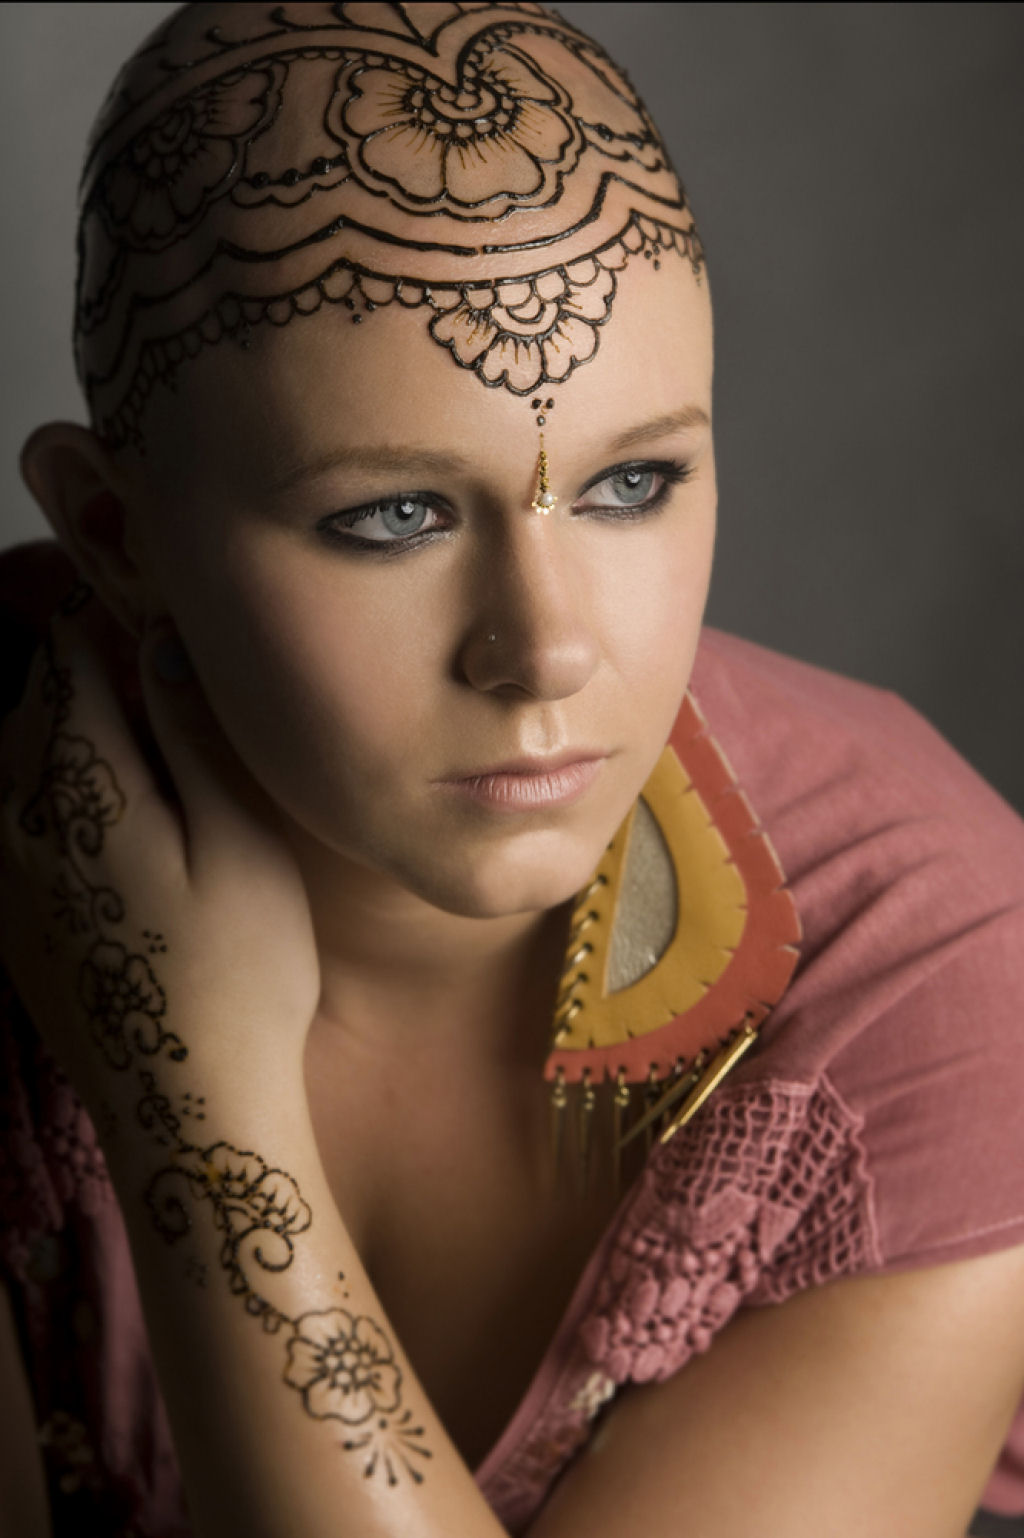 Organização fornece tatuagens de henna para elevar autoestima de mulheres  com câncer - Guiame